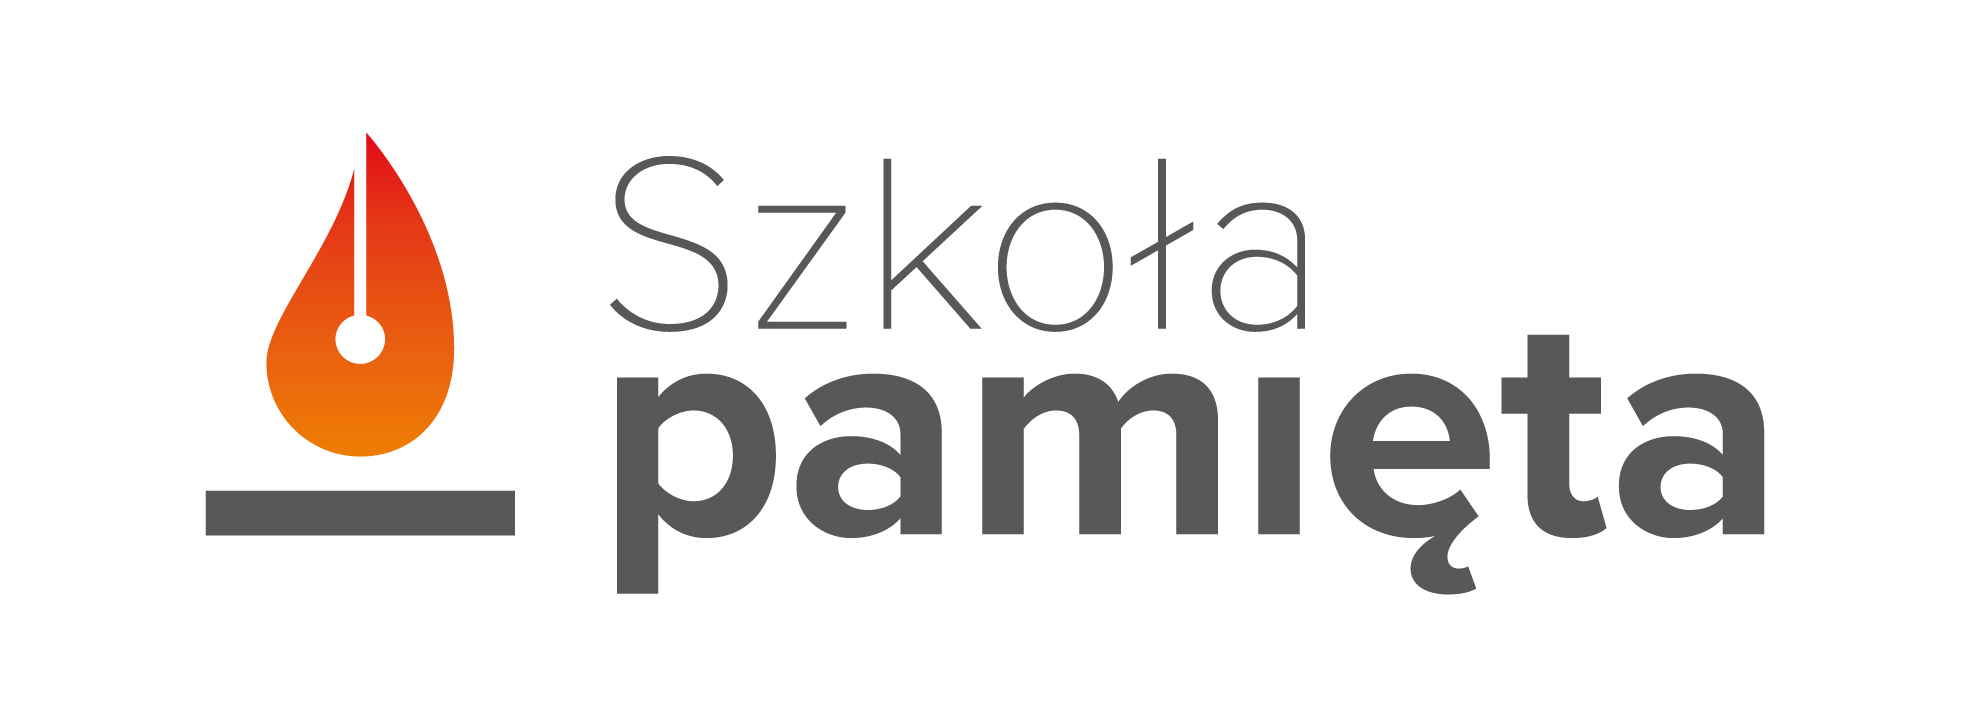 Logotyp akcji Szkoła Pamięta